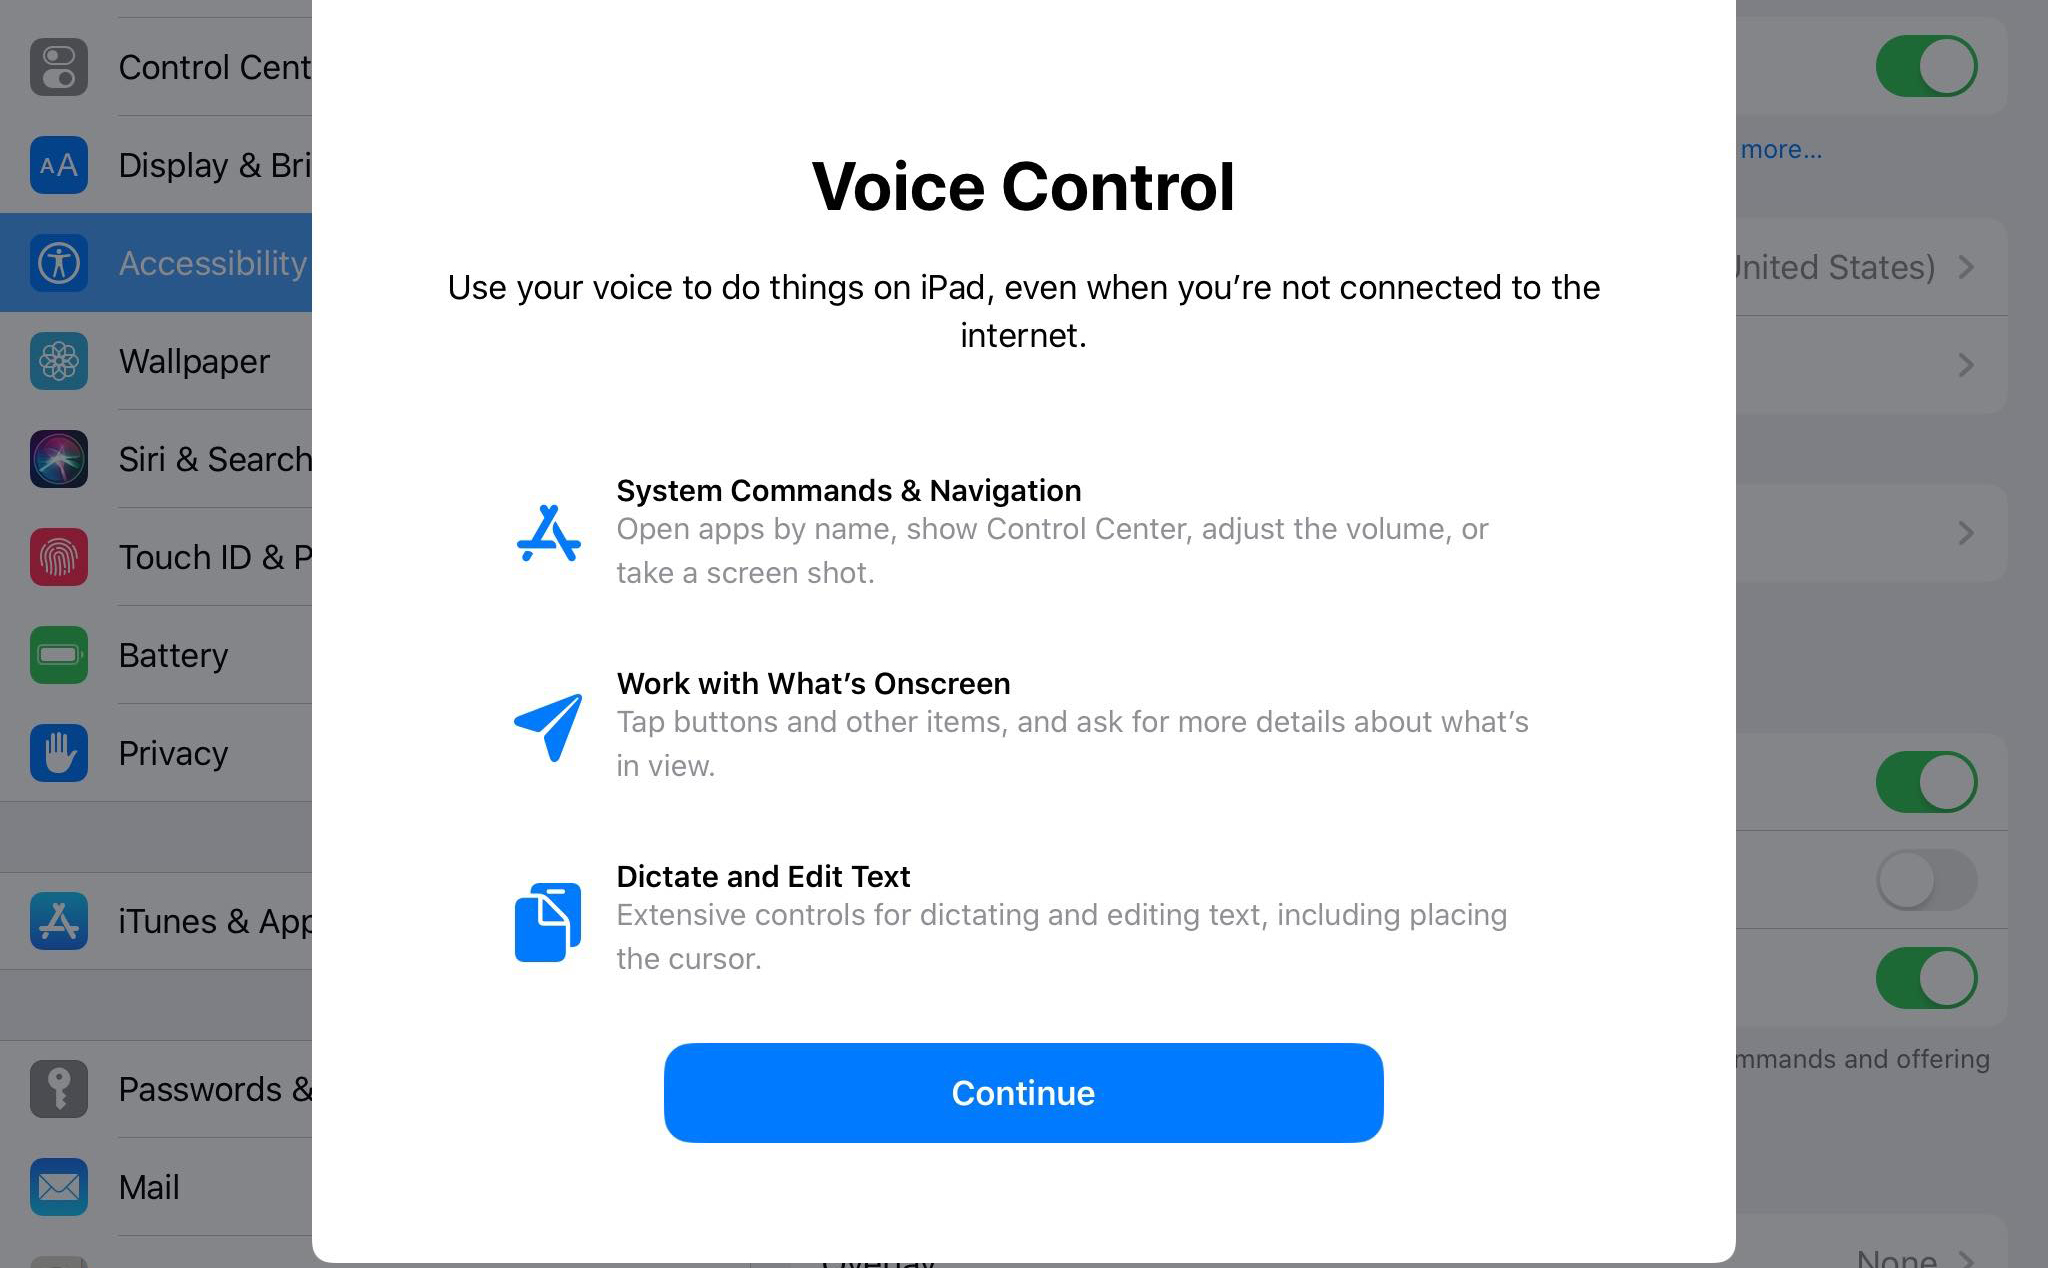 cover_Voice control IOS 13_tinhte.jpg